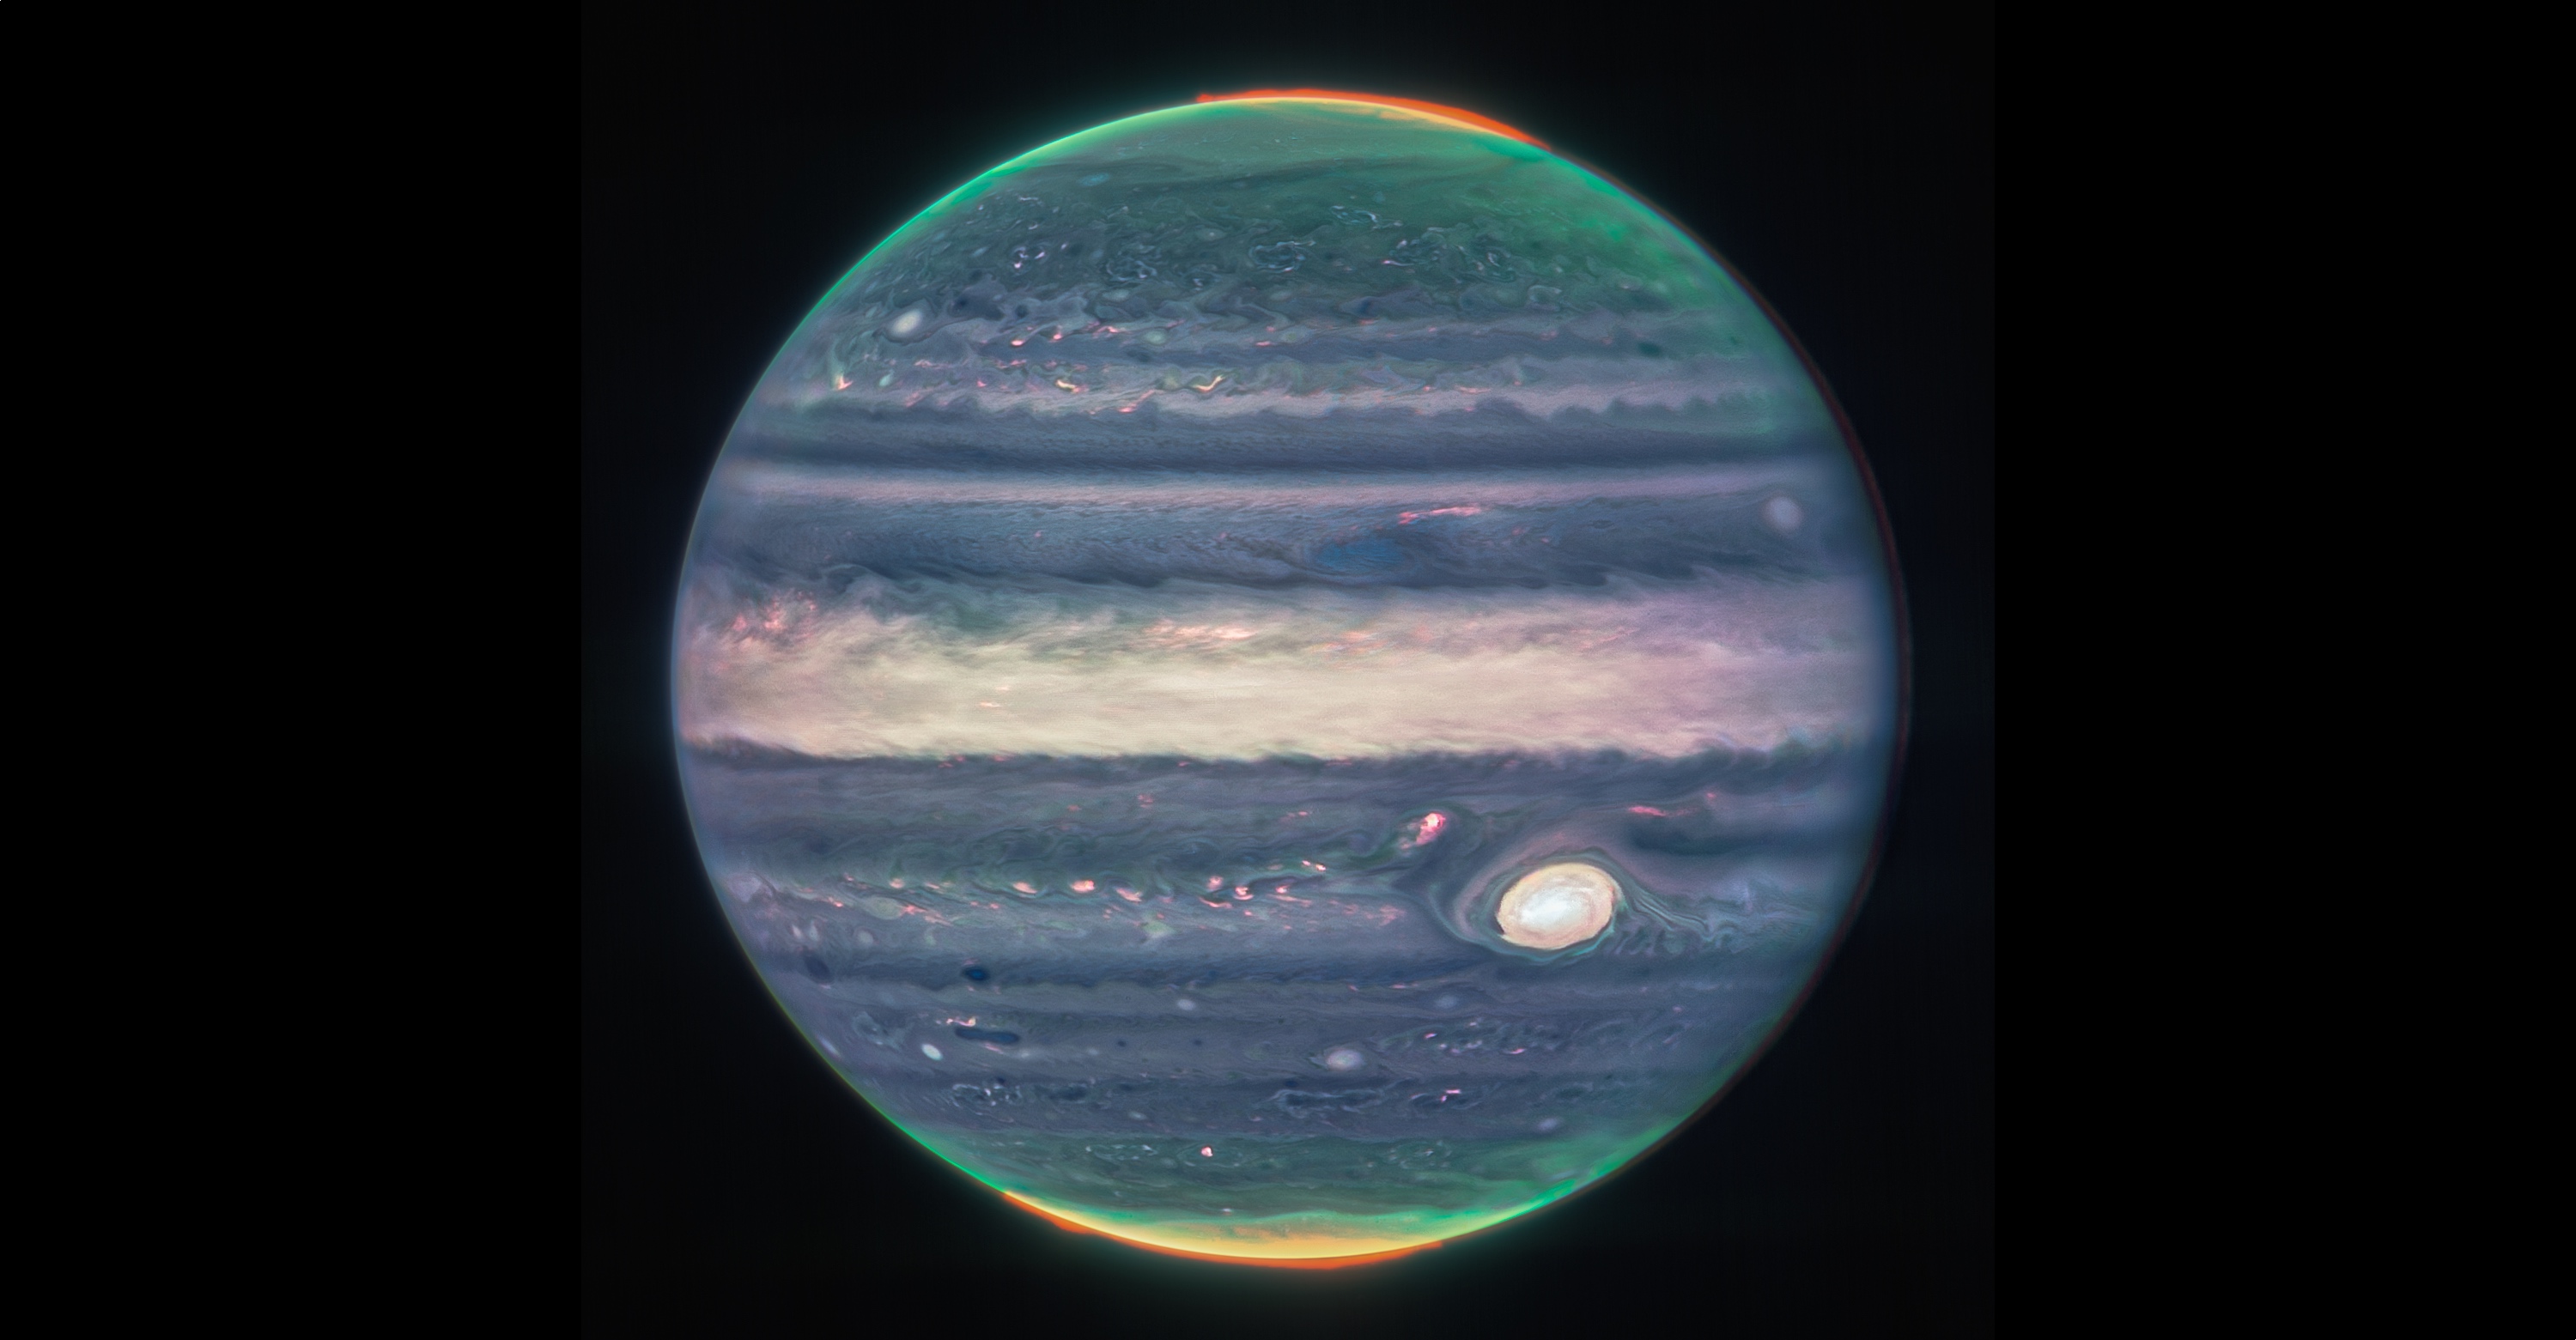 Le télescope spatial Nasa, ESA, CSA James Webb a capturé de nouvelles images de Jupiter.  © NASA, ESA, équipe Jupiter ERS ; traitement d'image par Judy Schmidt 